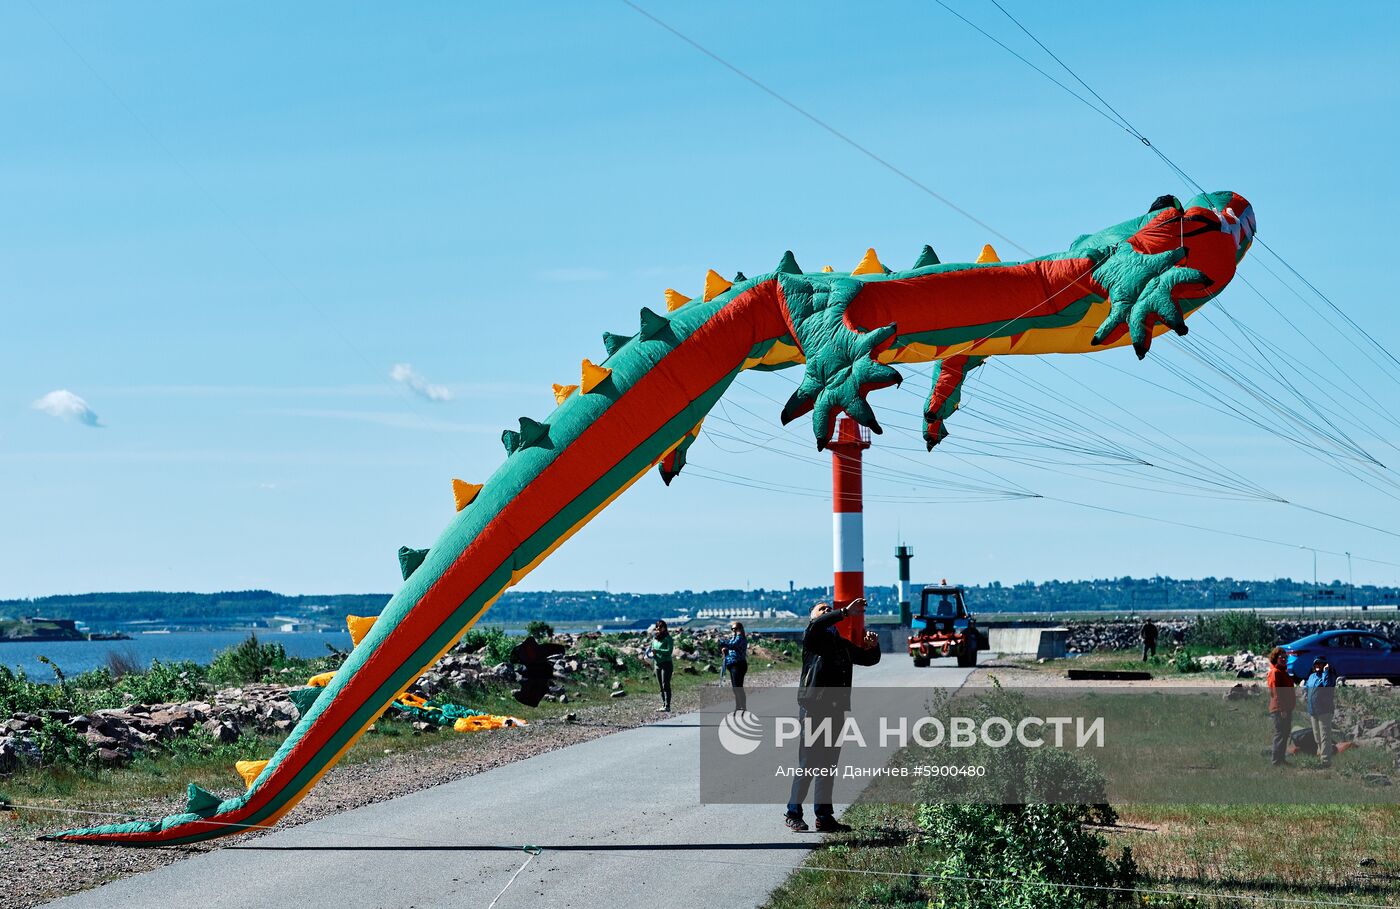 III Международный фестиваль воздушных змеев "Фортолет"